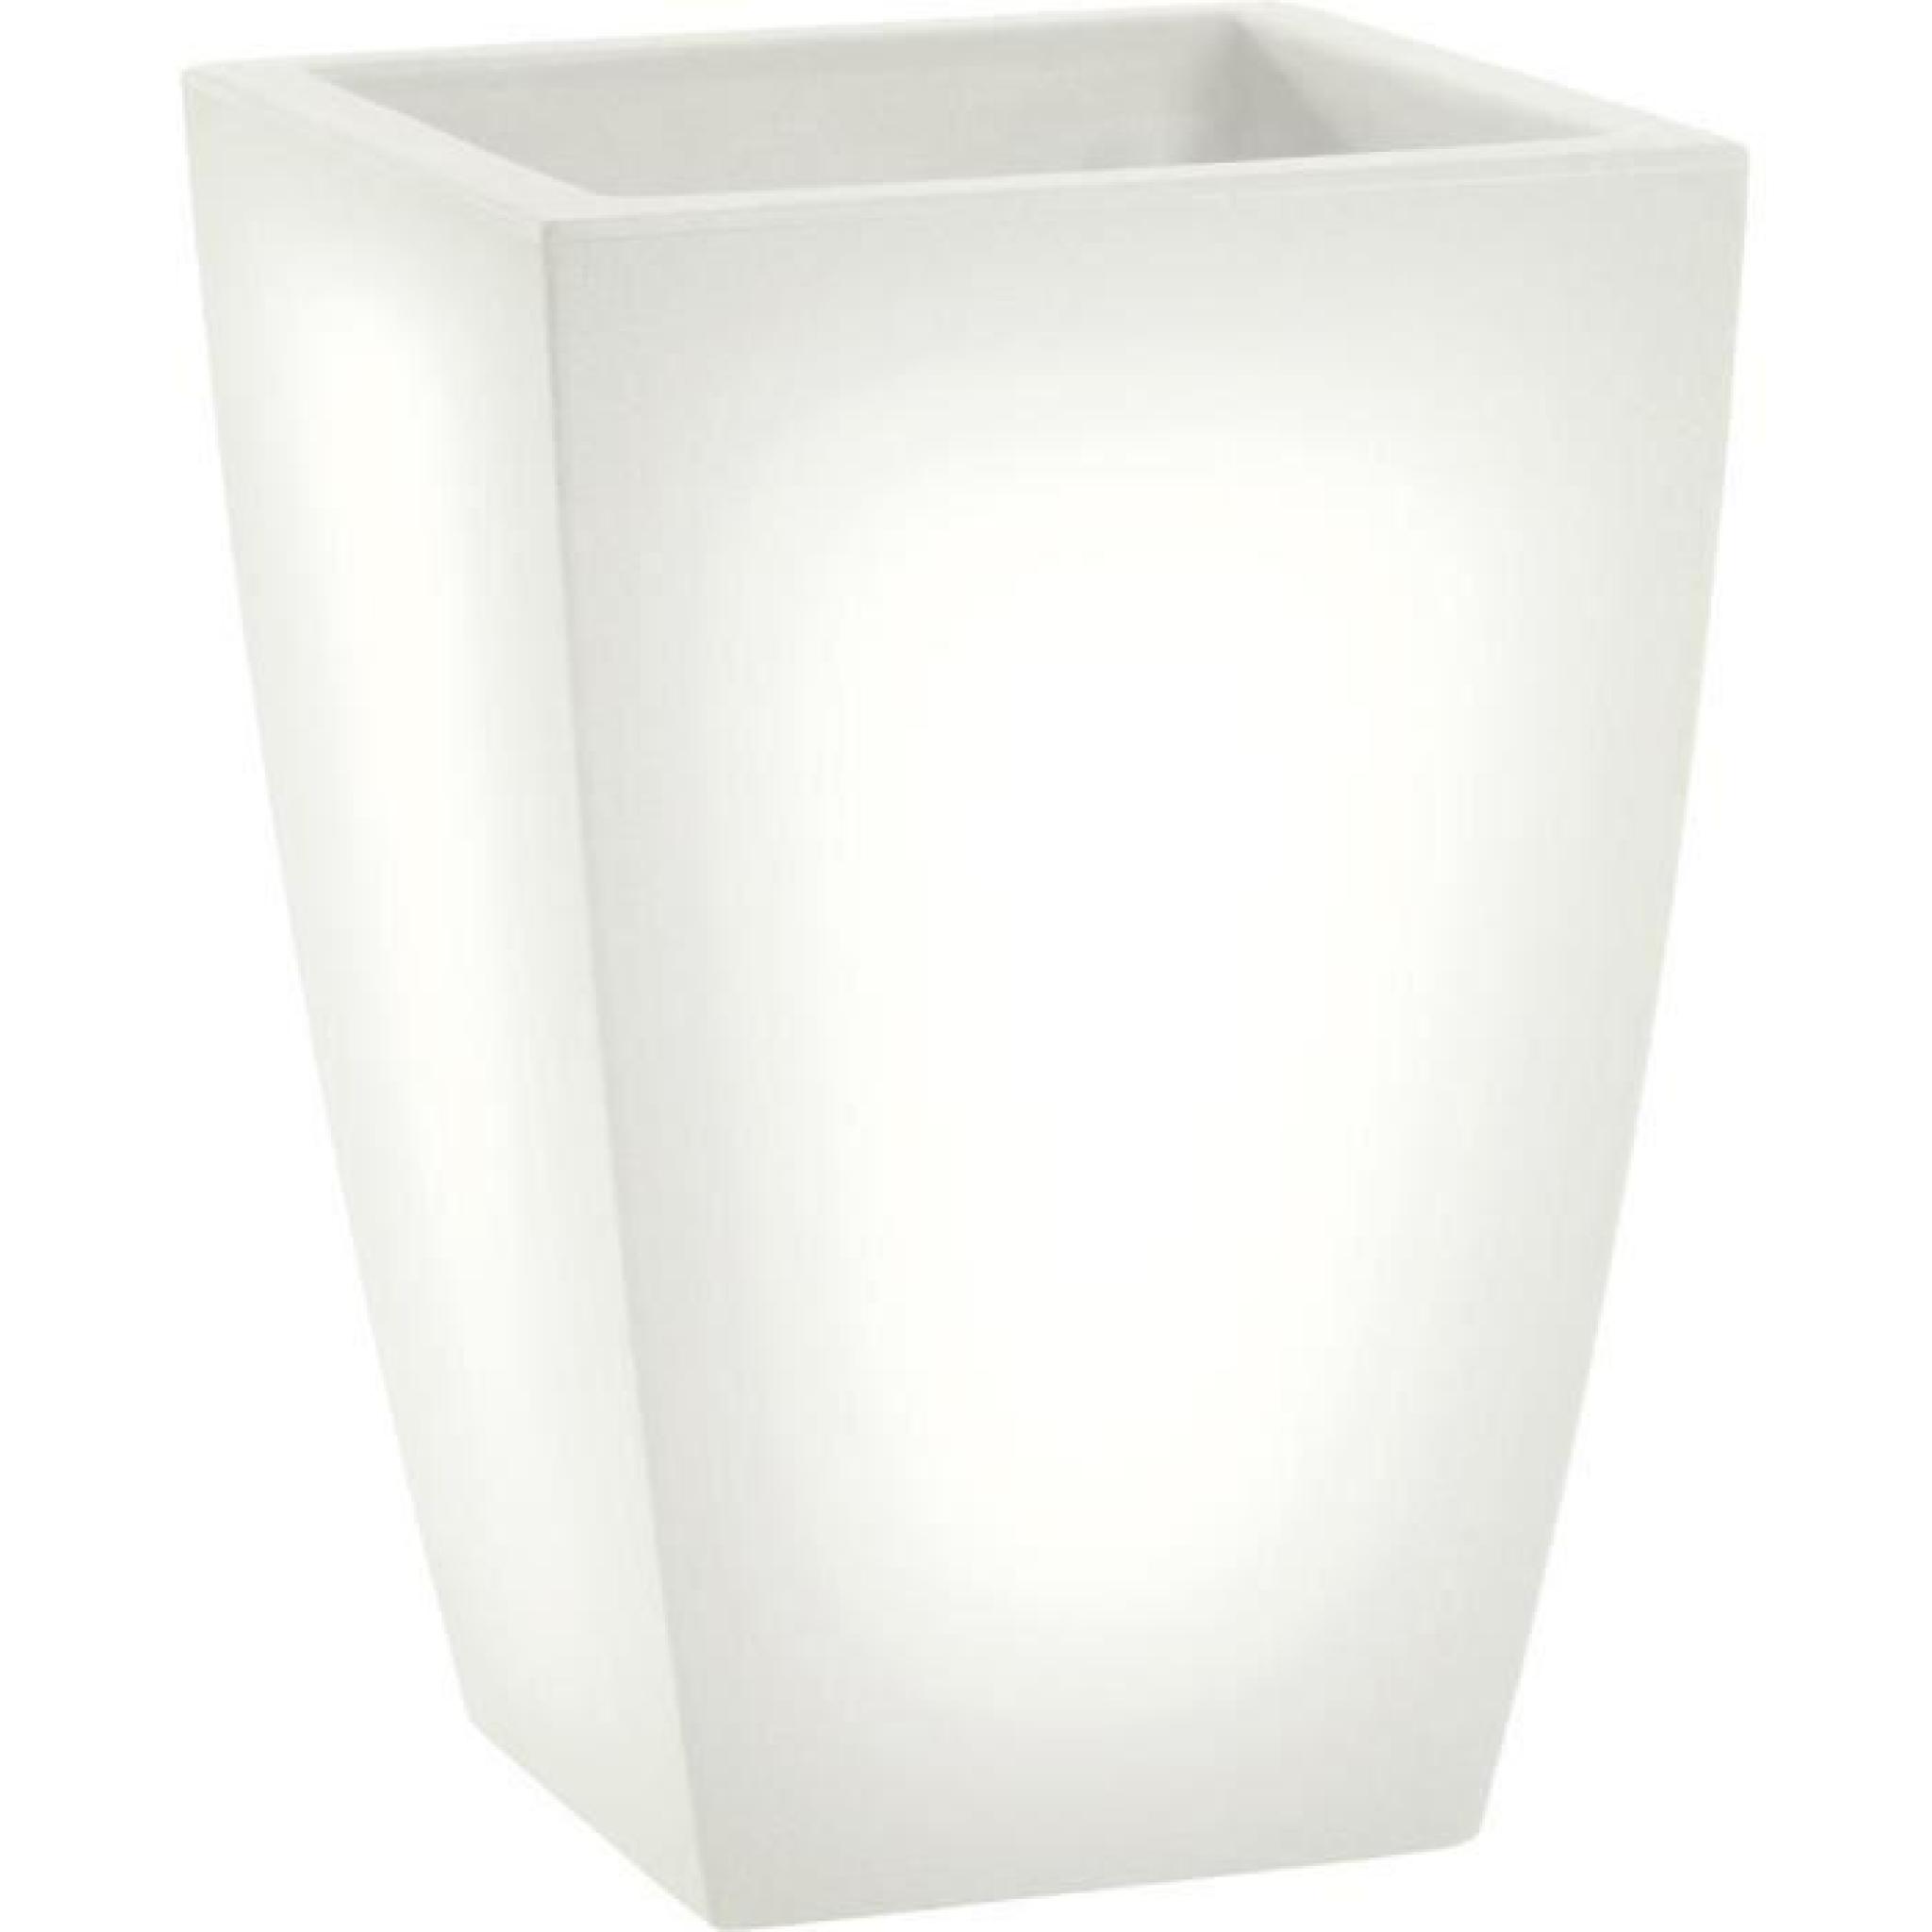 LED pot de fleurs lumineux, lumière blanc jour, l40 x h100 x l40 cm, fait de haute qualité polyéthylène